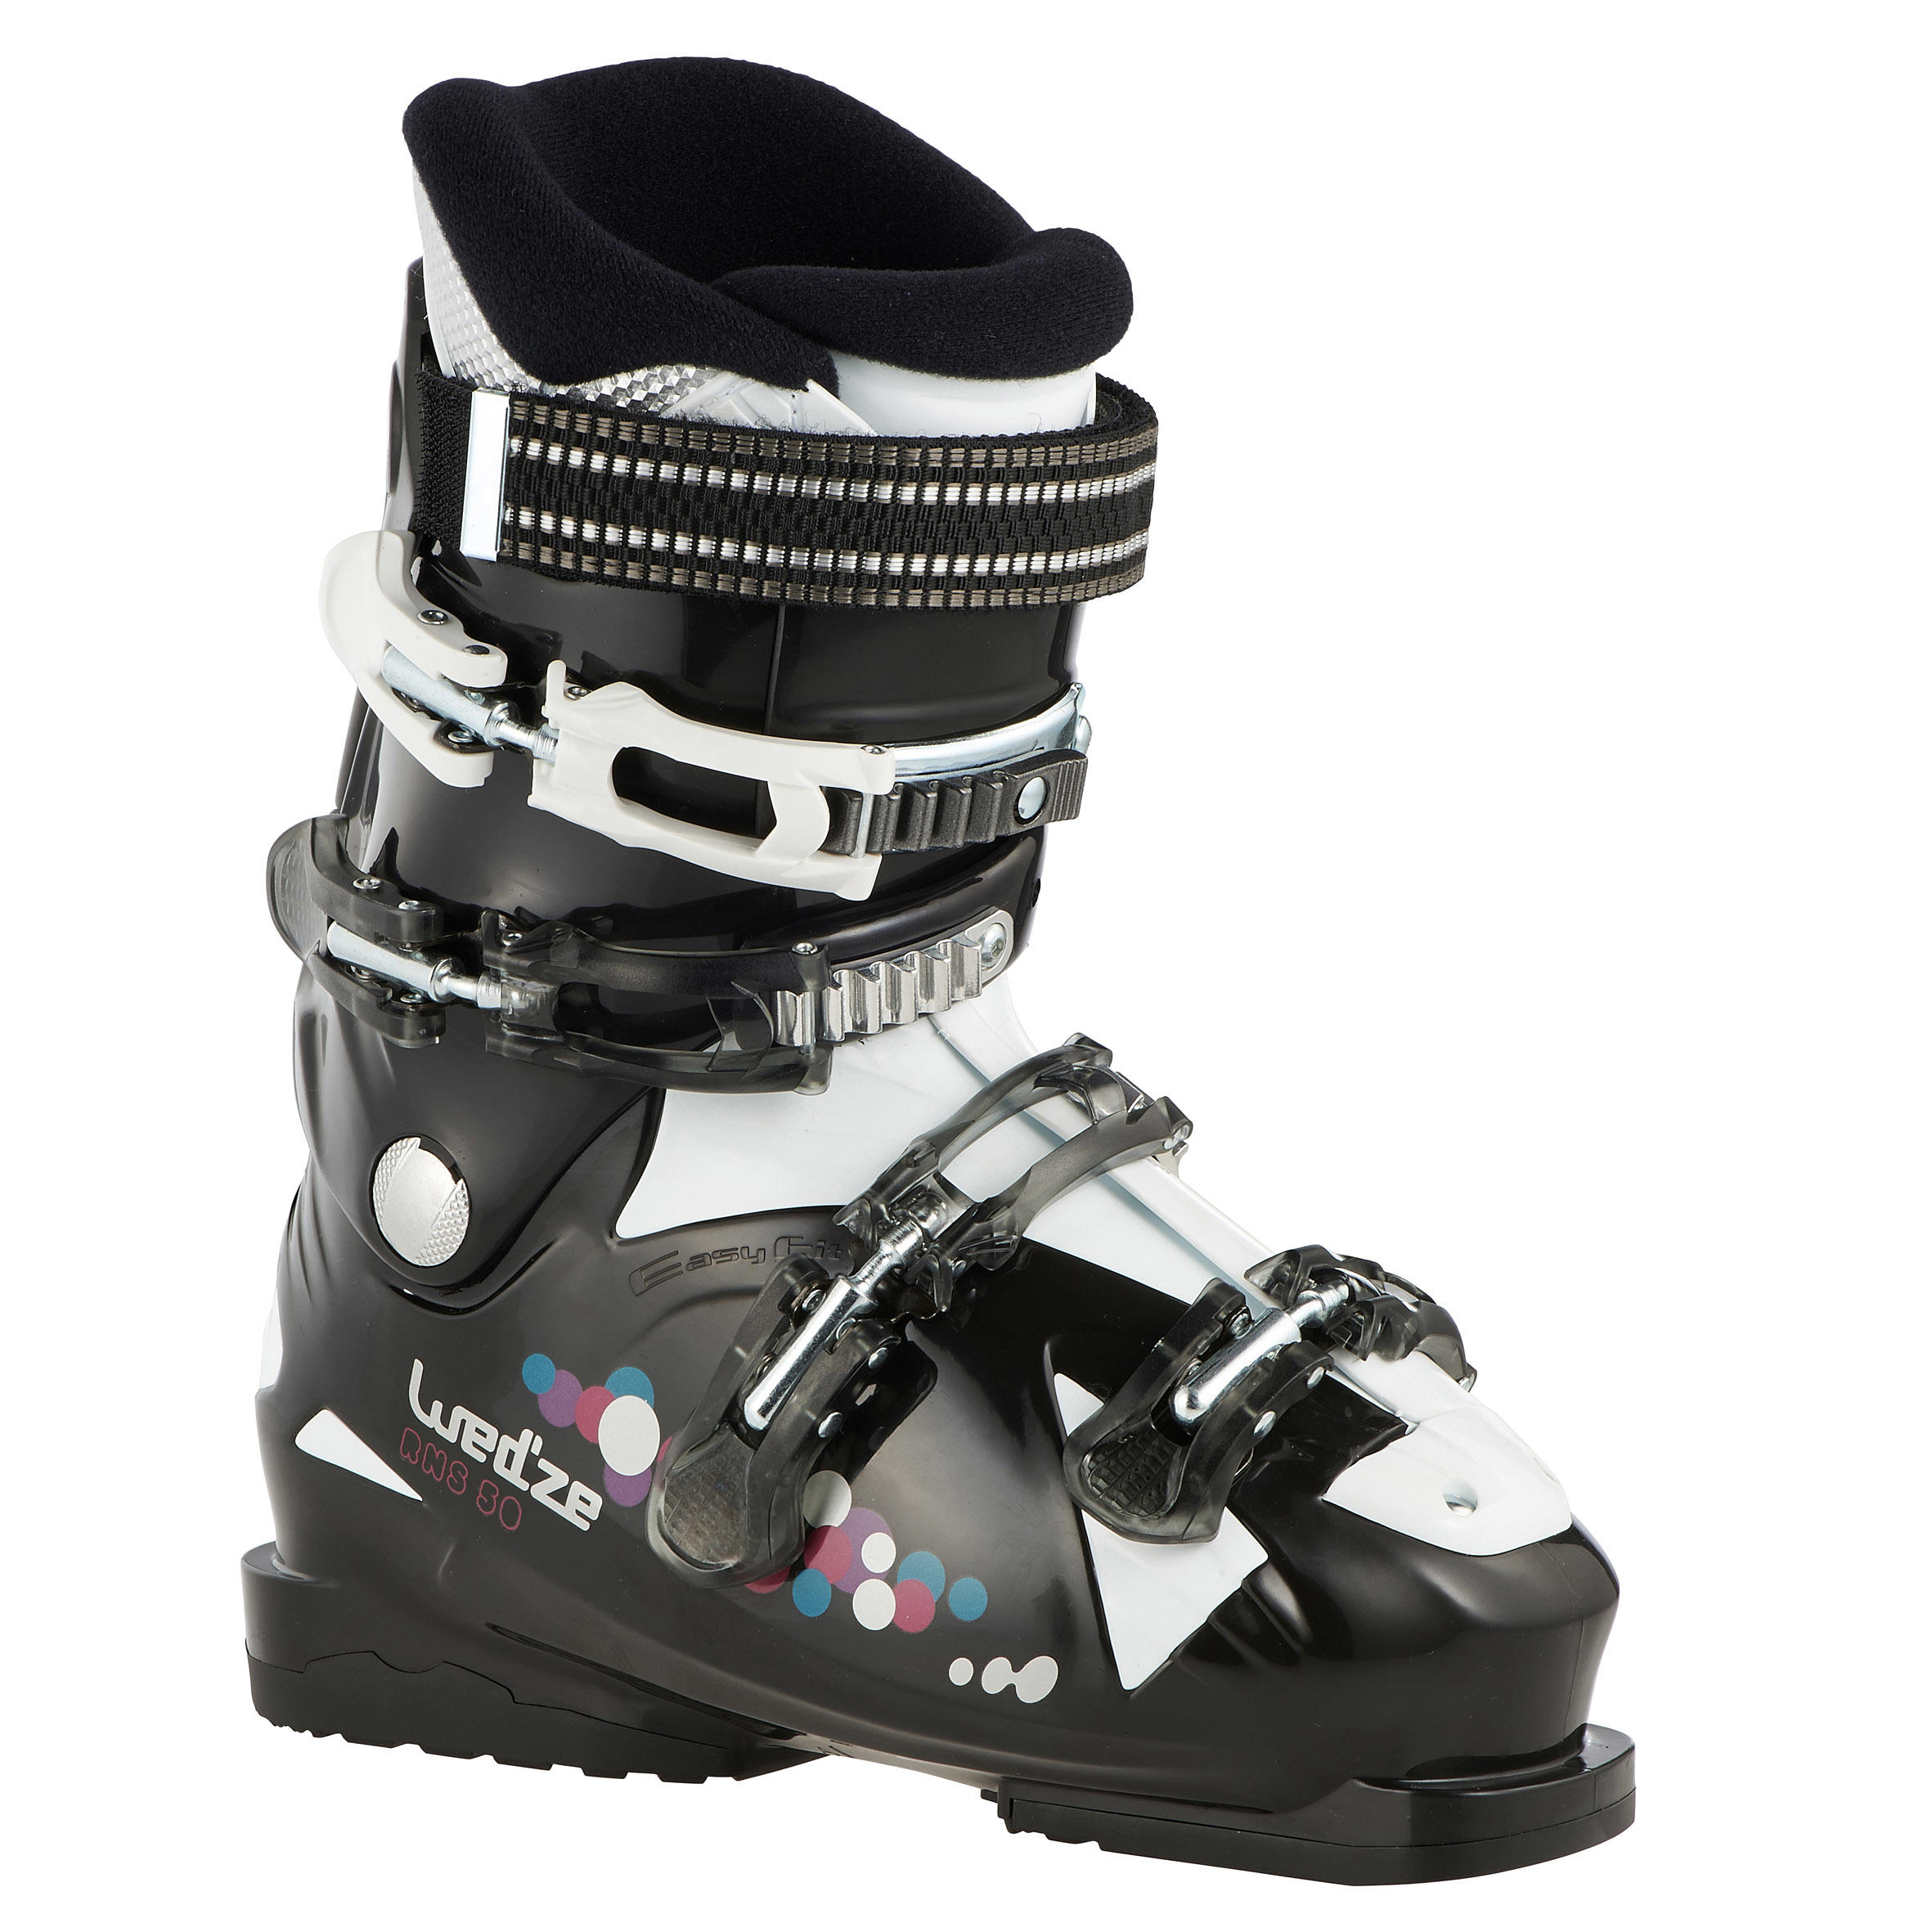 WEDZE RNS 50 Rental Women's Ski Boots